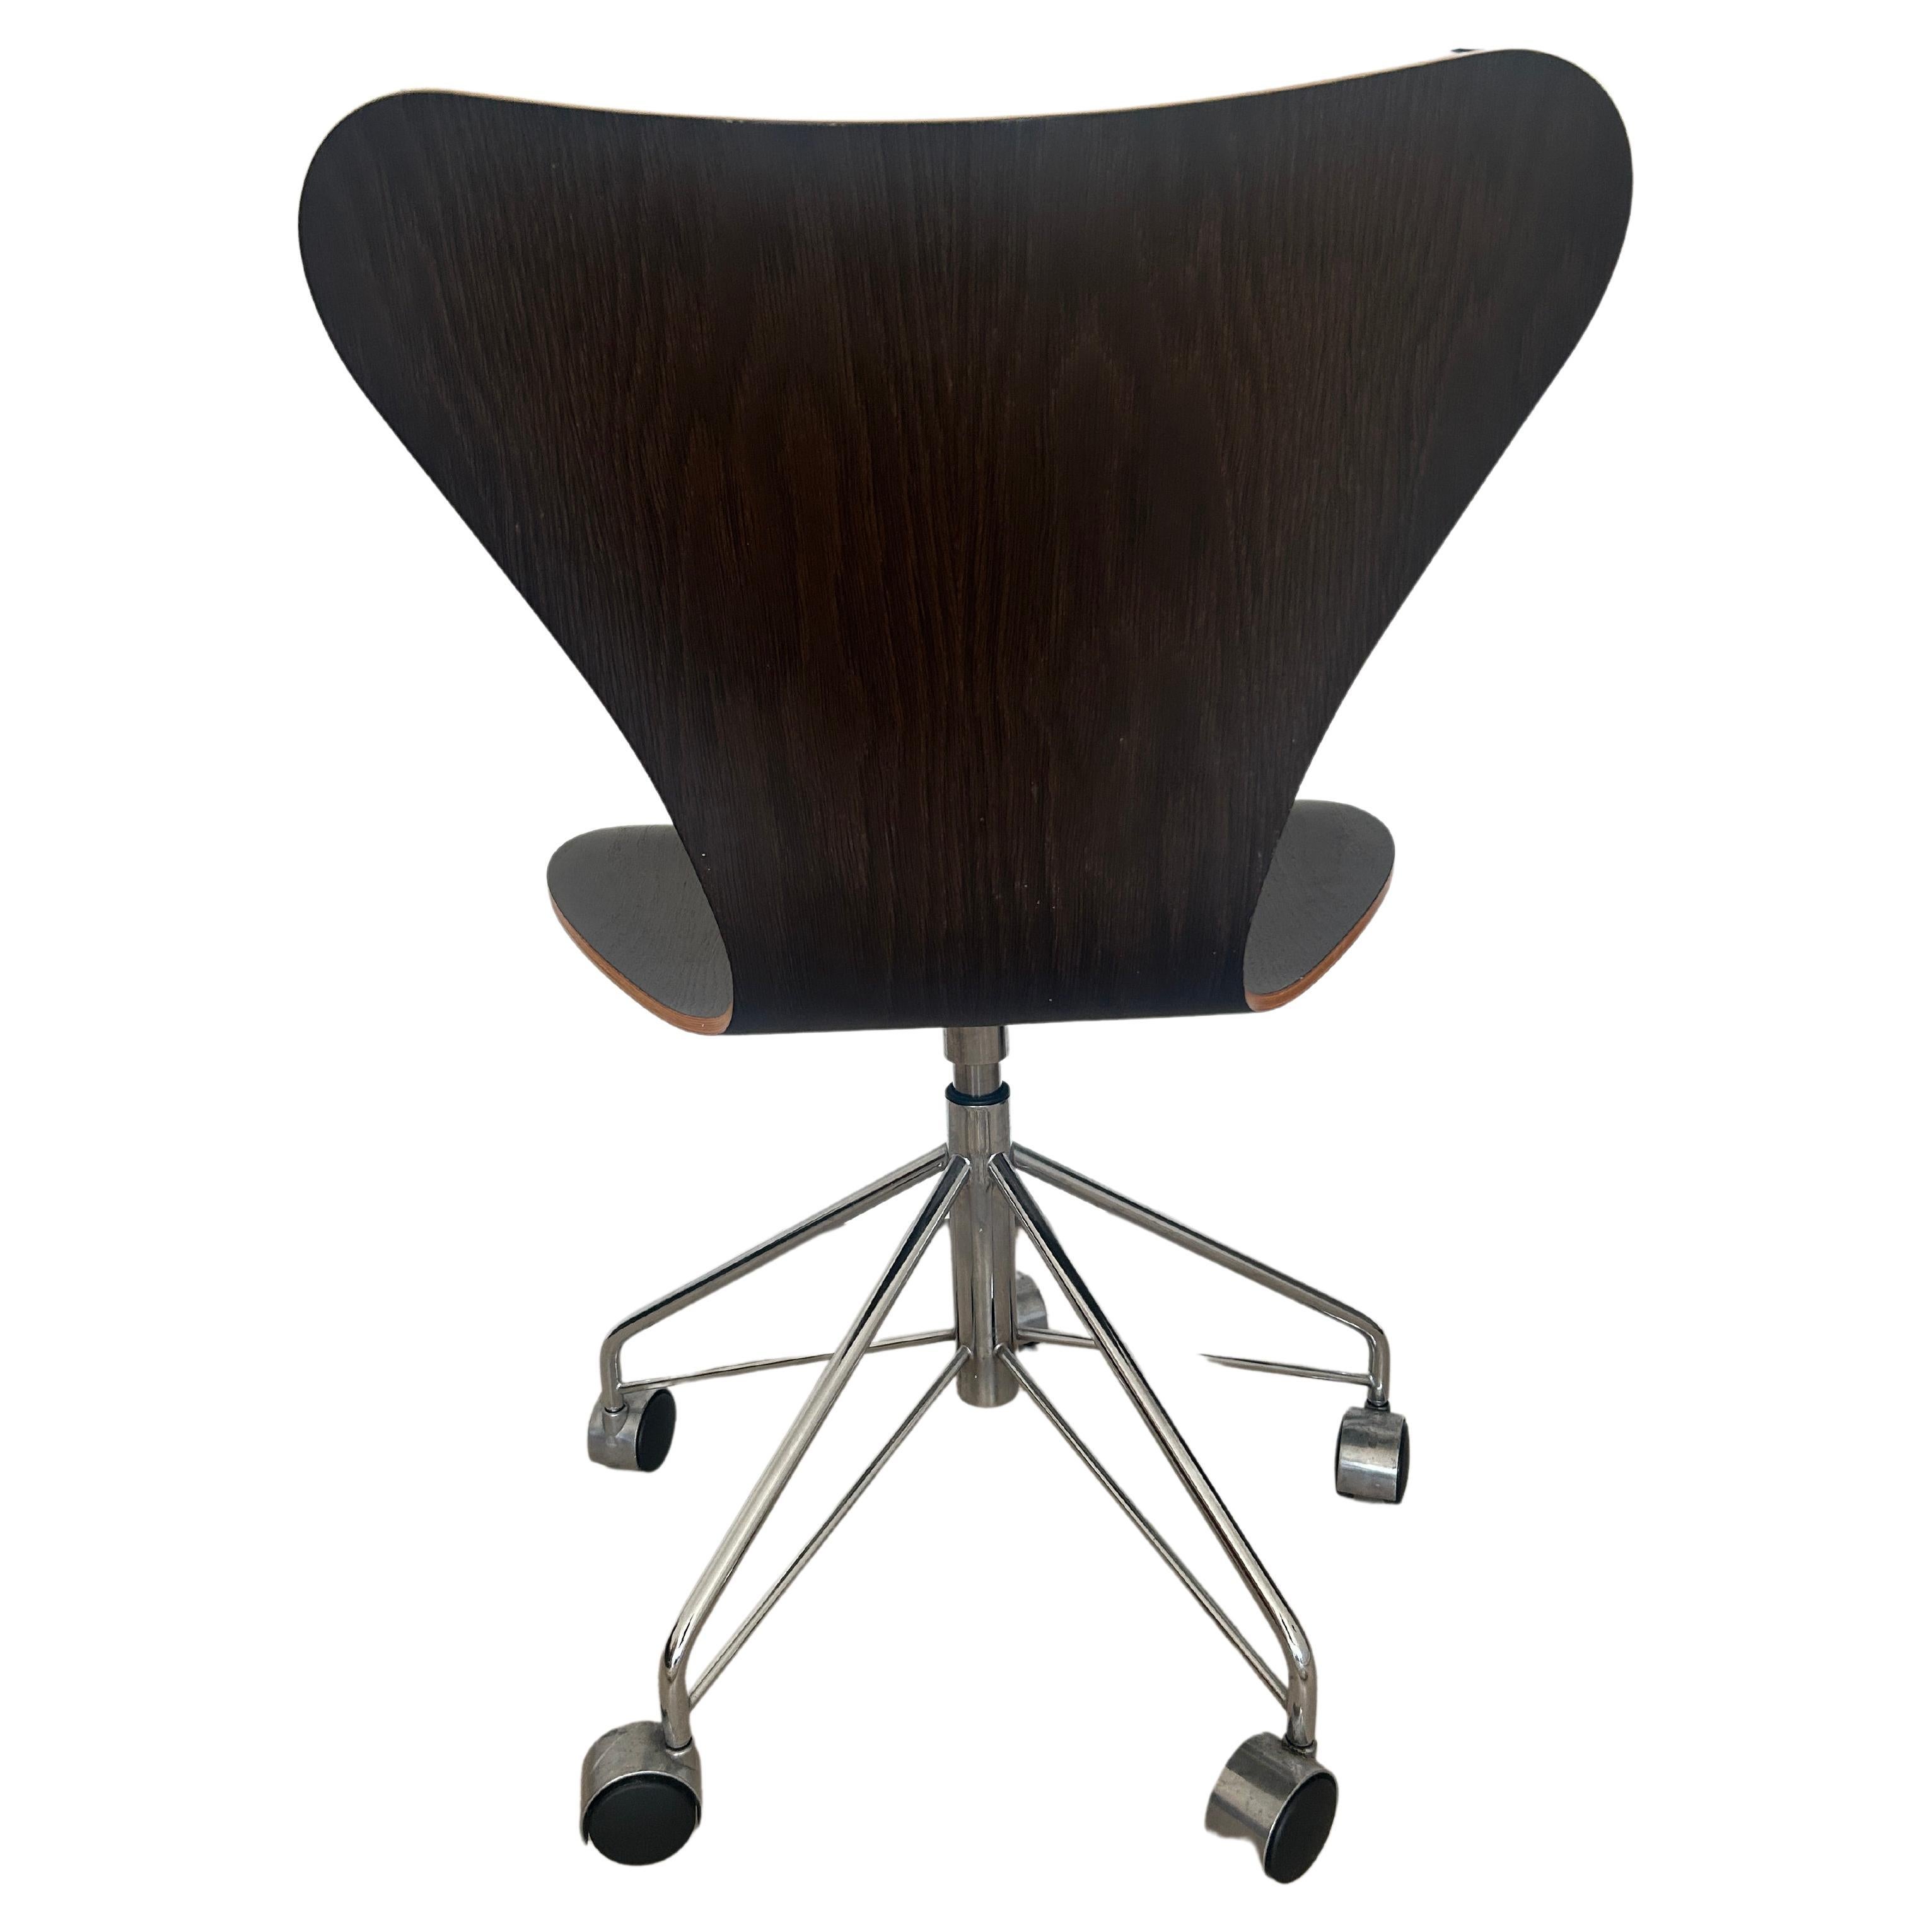 (1) Danish Modern Design der Serie 7 Stuhl auf einem originalen rollenden 5-Sternfuß mit Rollen. Entworfen von Arne Jacobsen für Fritz Hansen. Dunkelbraune Eiche auf einem geformten Sitz aus Bugholz. Das Hotel liegt in Brooklyn NYC. Bereit für den